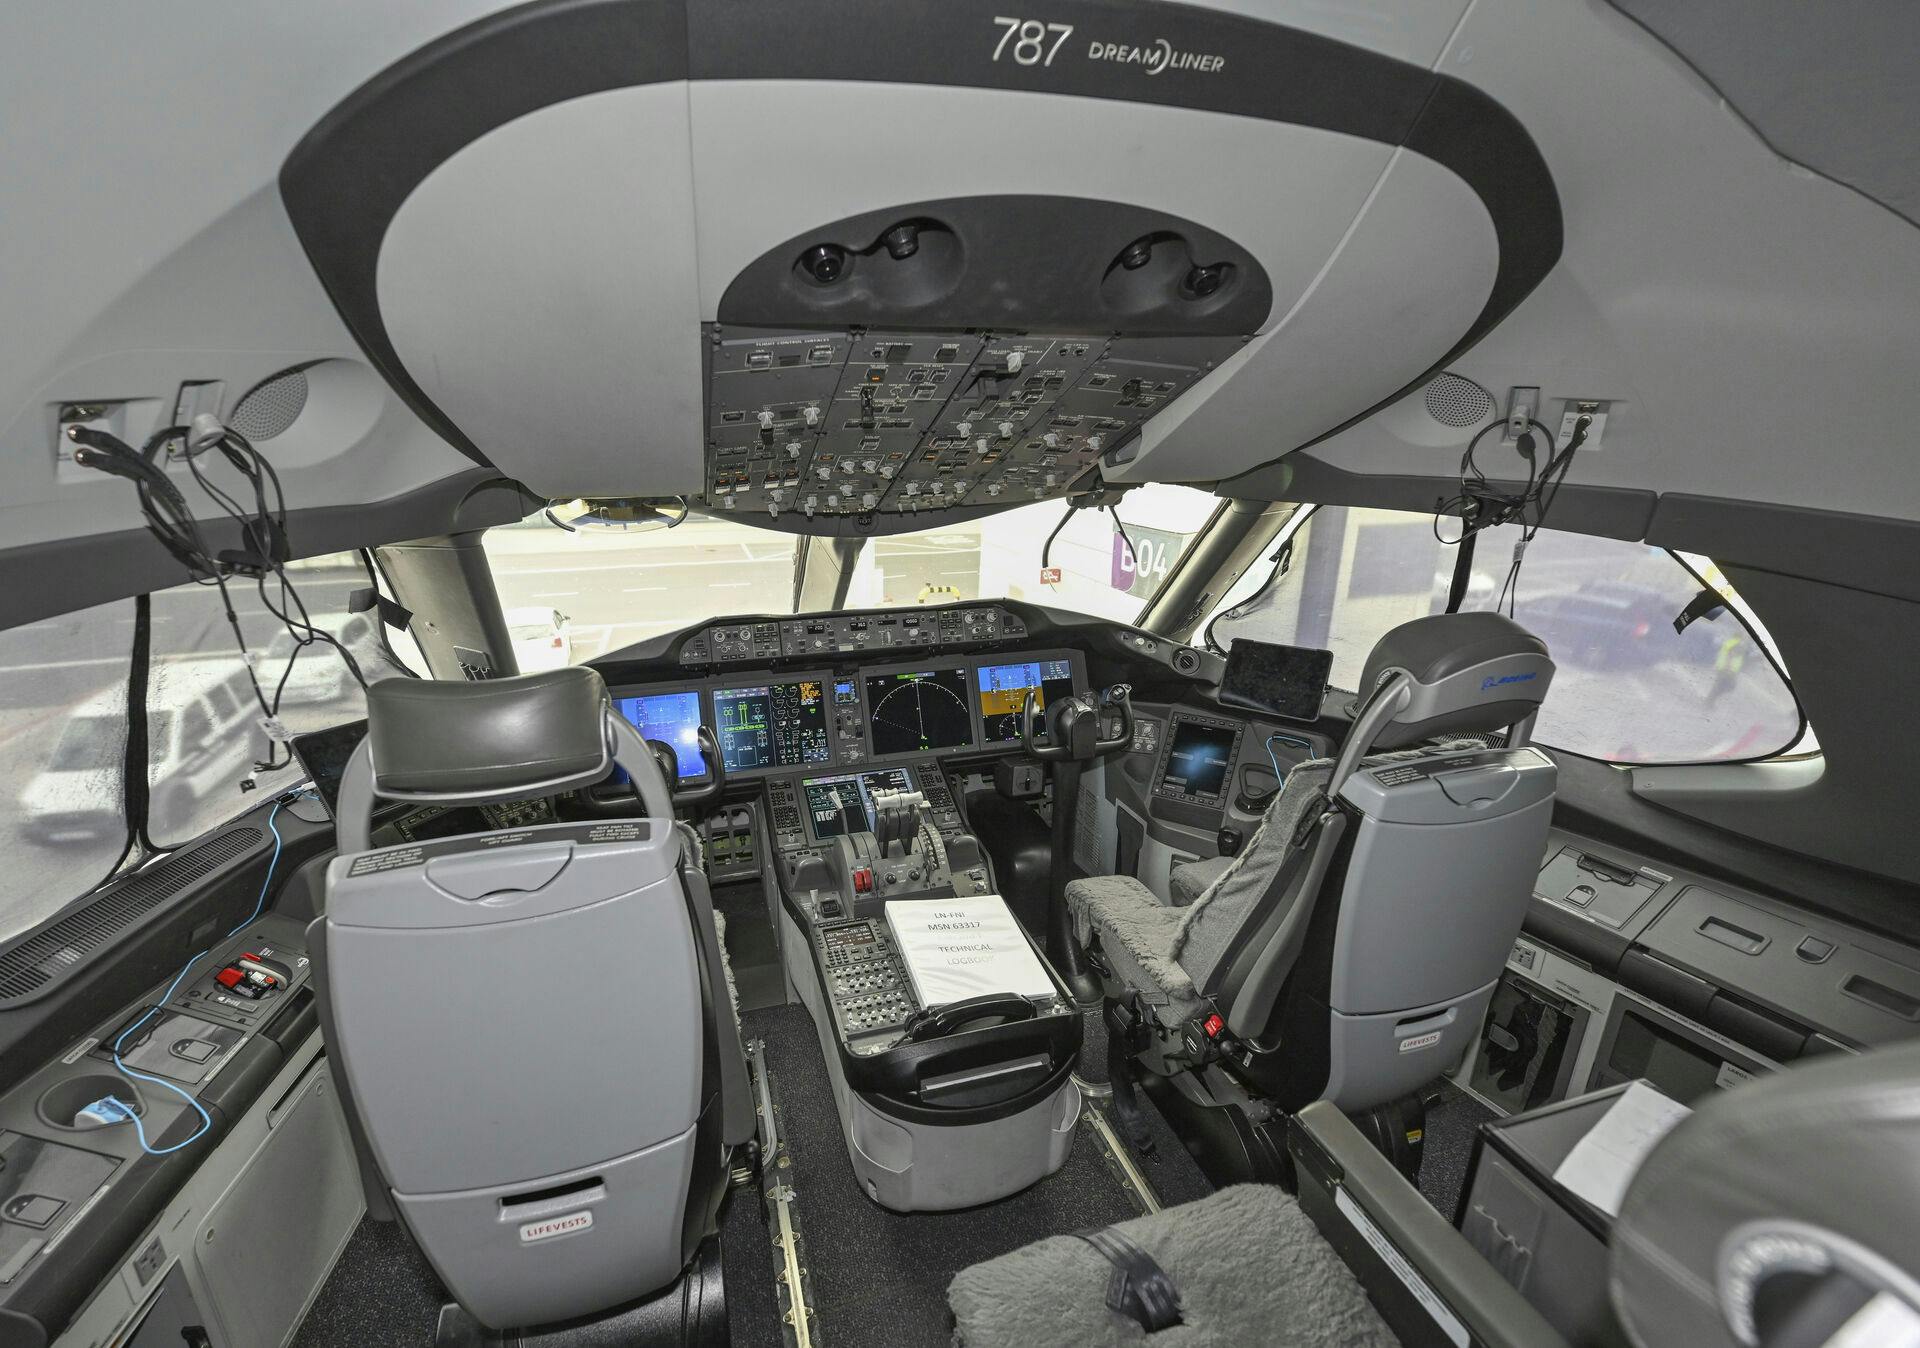 Det er i et cockpit som dette, at ulykken skete, da der blev trykket på en knap, som tvang pilotens sæde frem og direkte ind i udstyret, som styrer flyet.